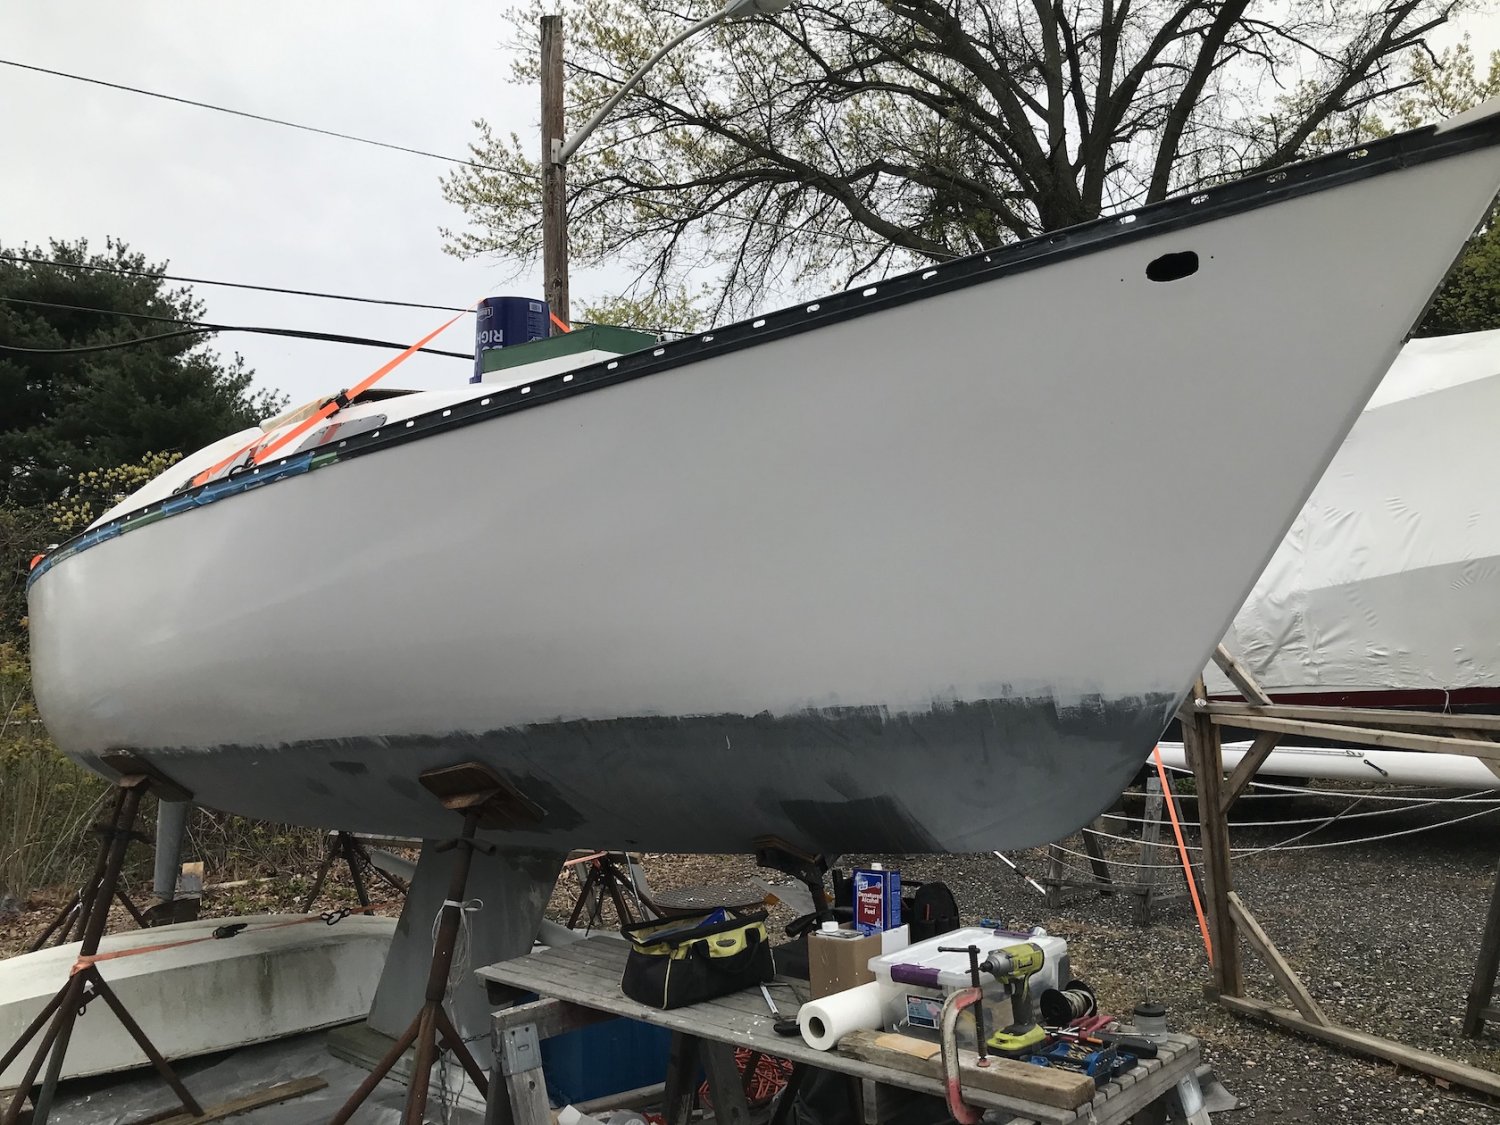 2021.0425 Diana, hull paint